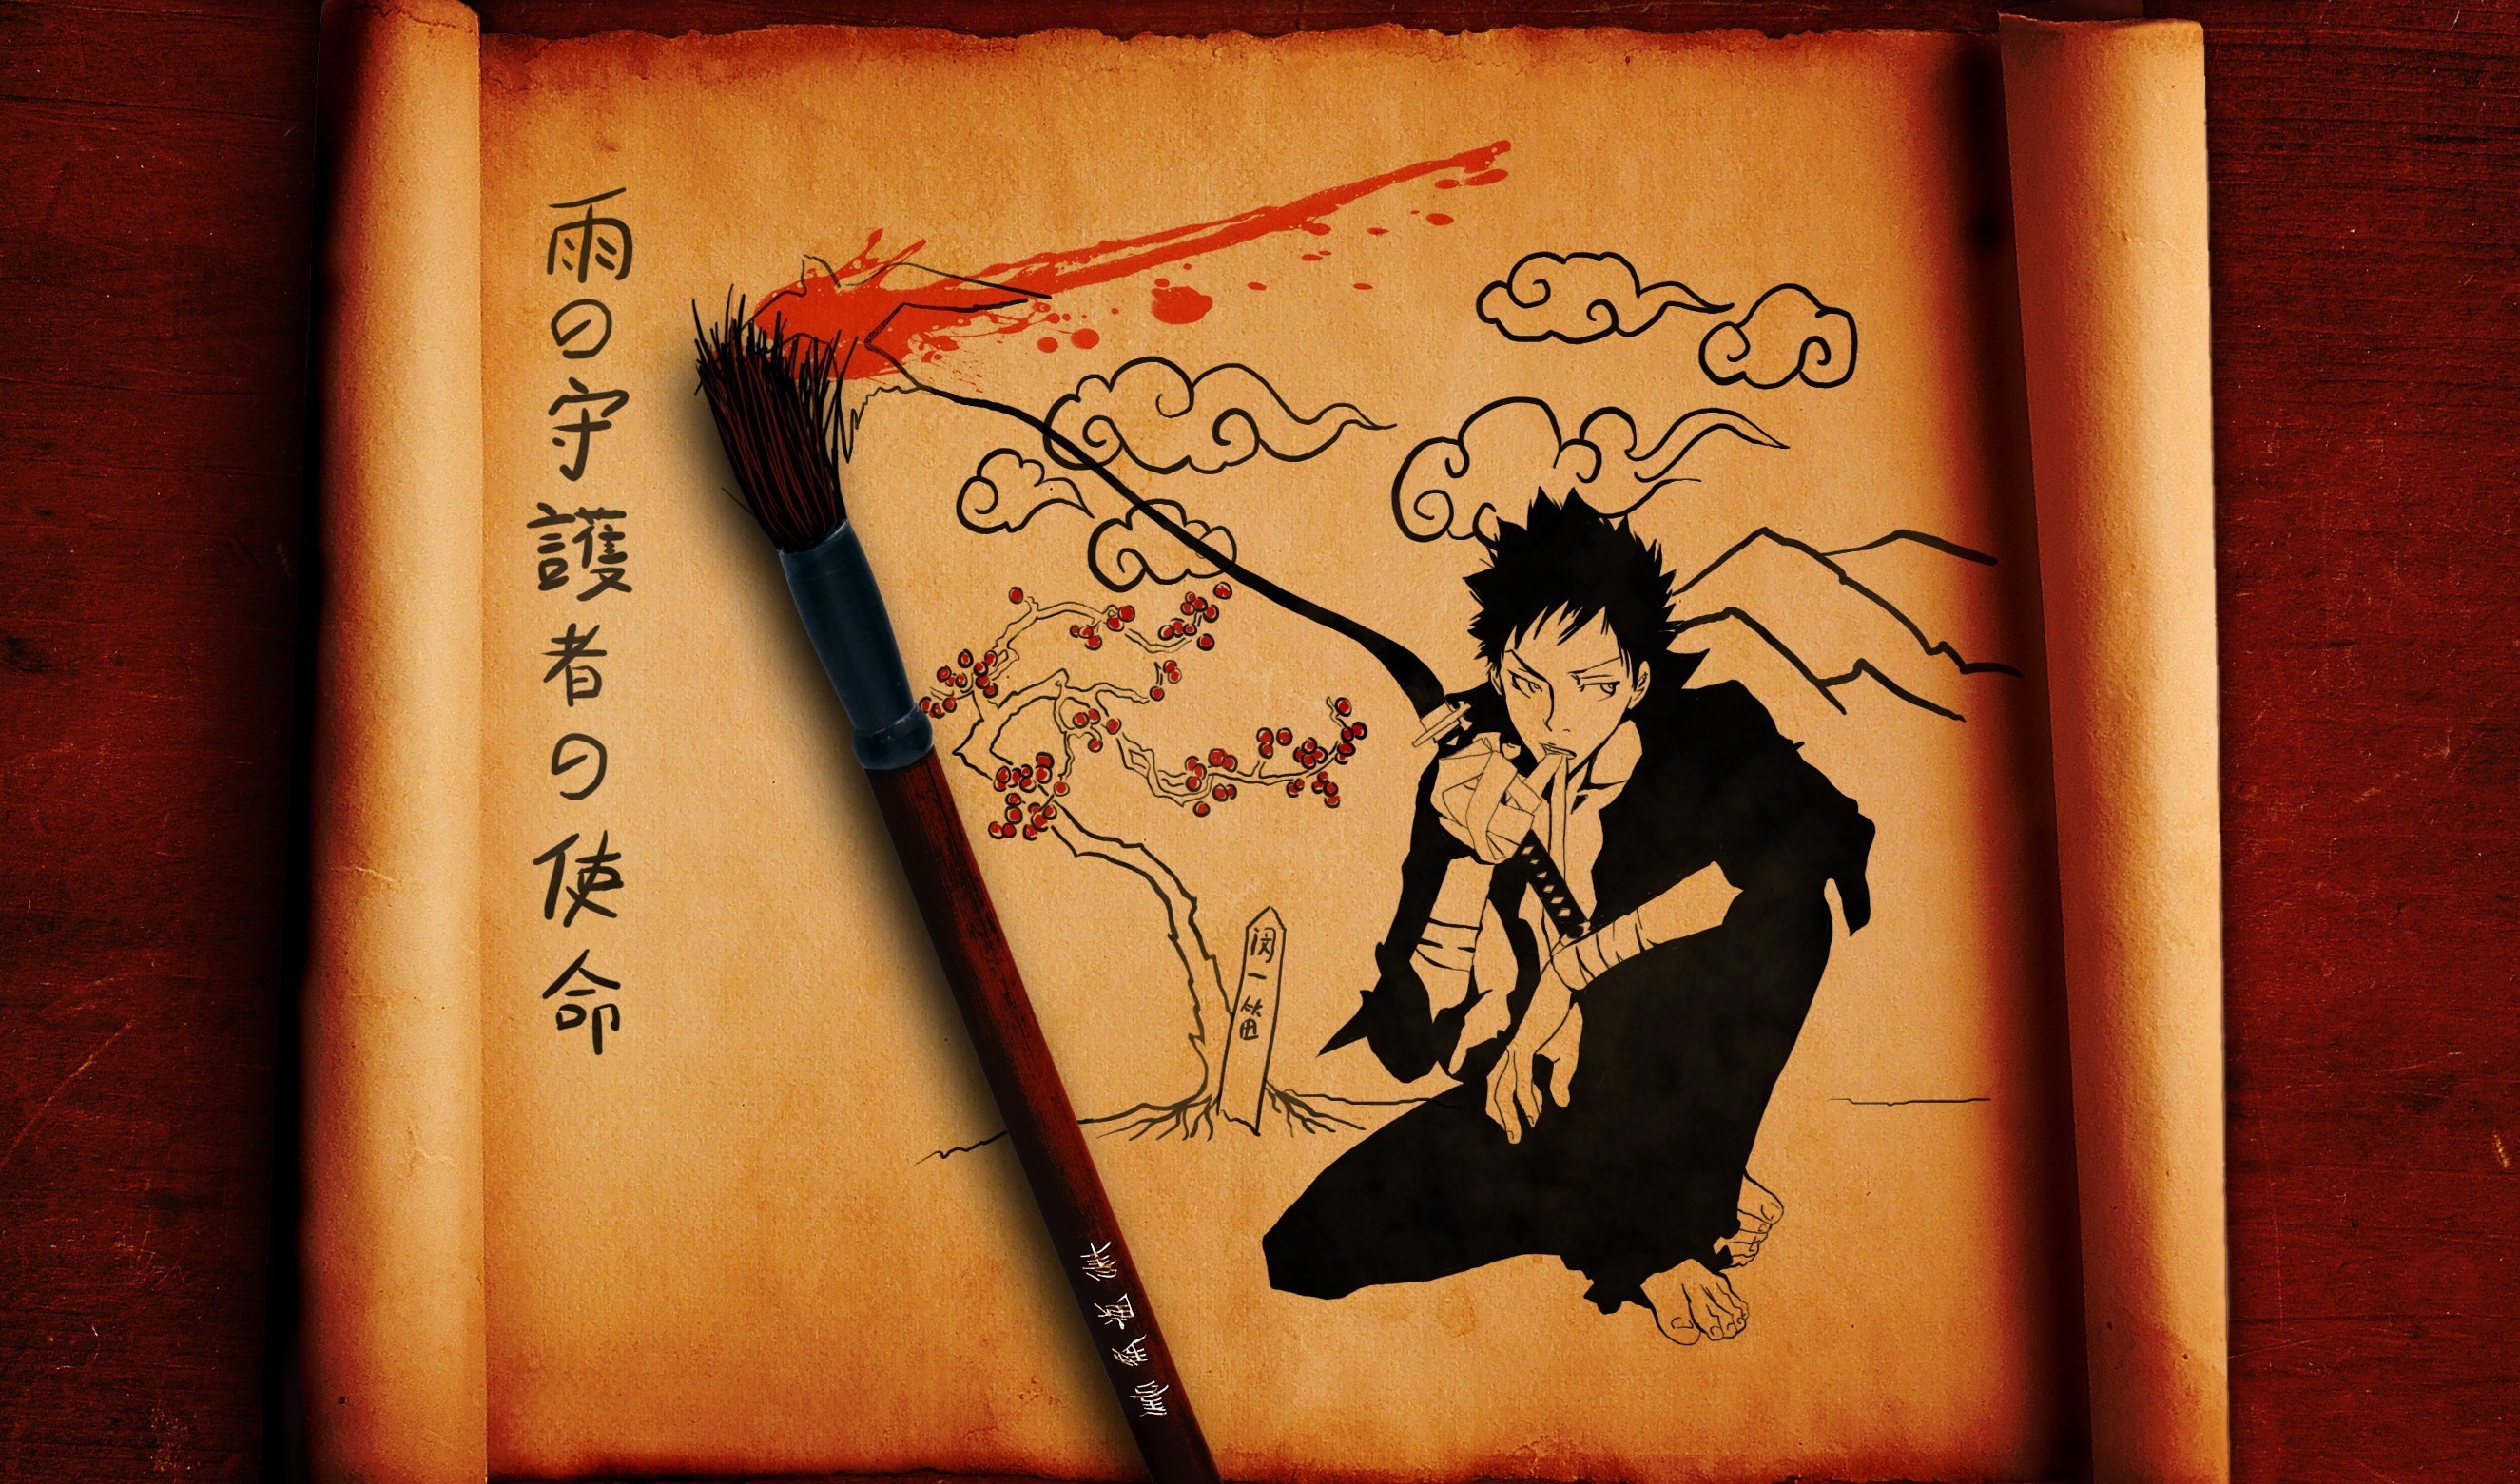 Free download wallpaper Anime, Katekyō Hitman Reborn! on your PC desktop